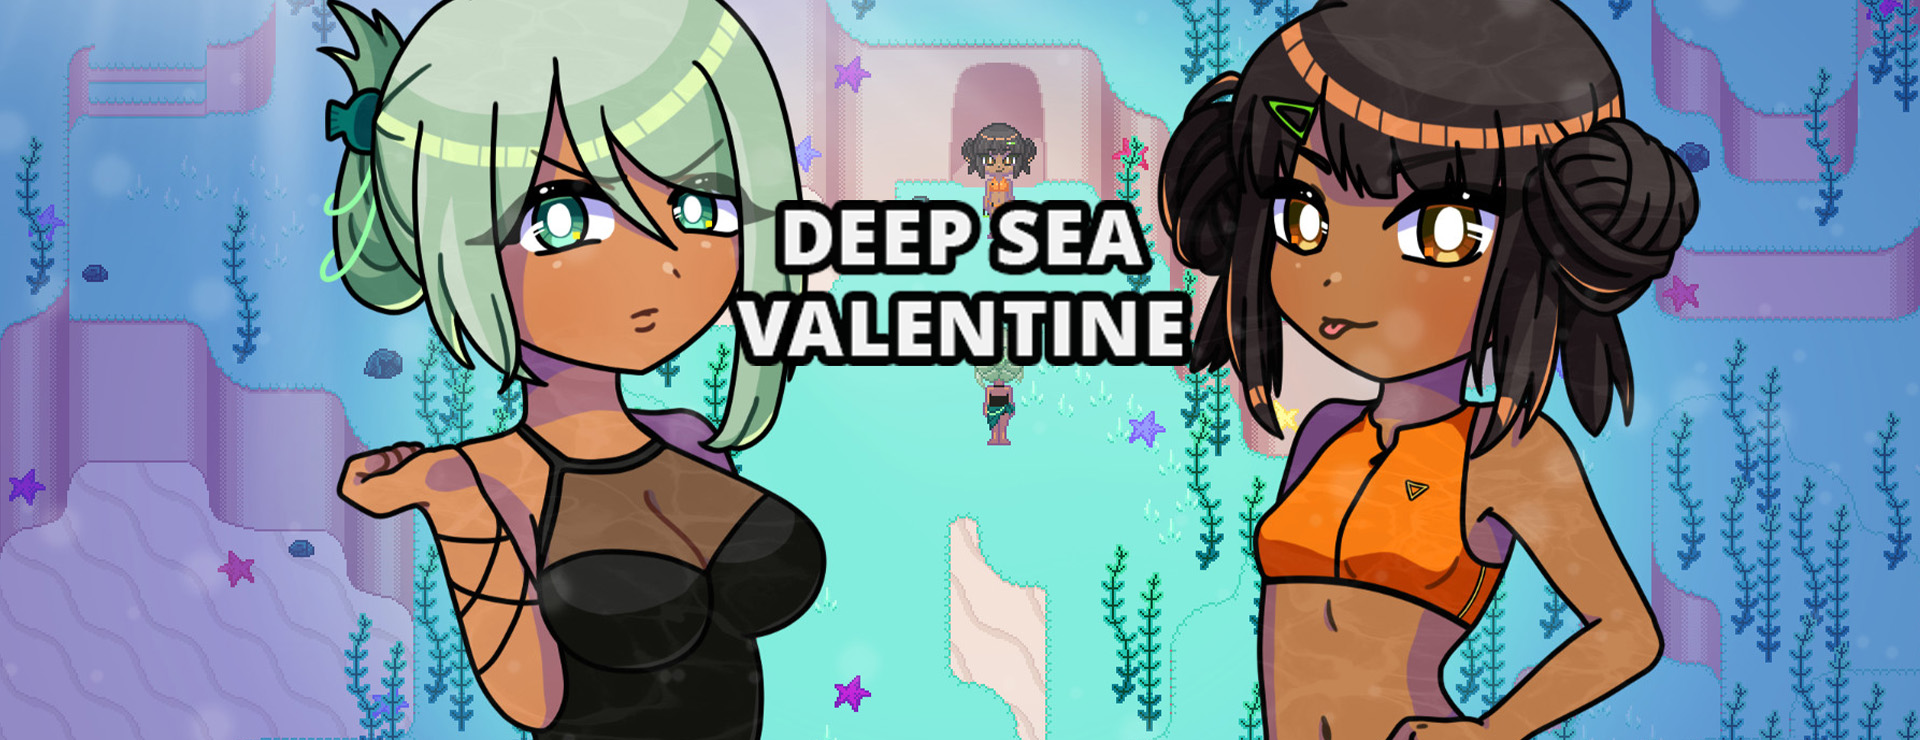 Deep Sea Valentine - Novela Visual Juego